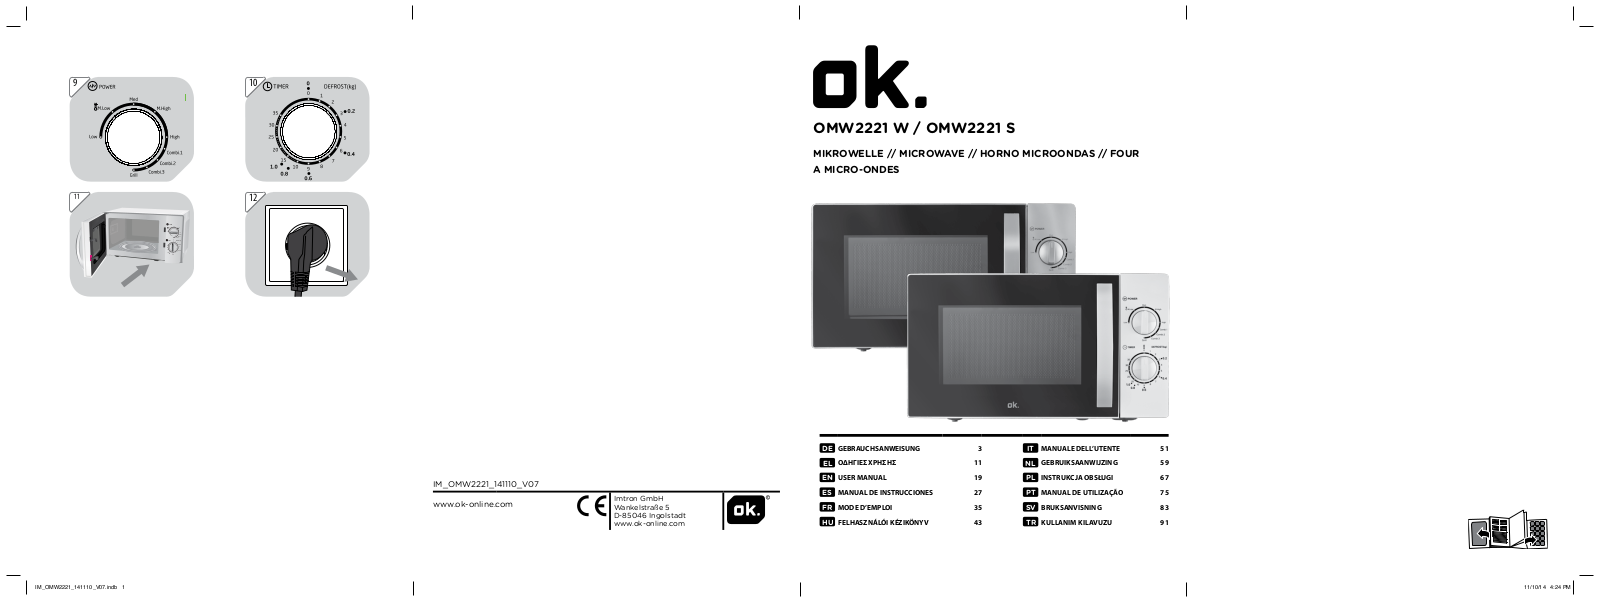 OK OMW 2221 W, OMW 2221 S User Manual